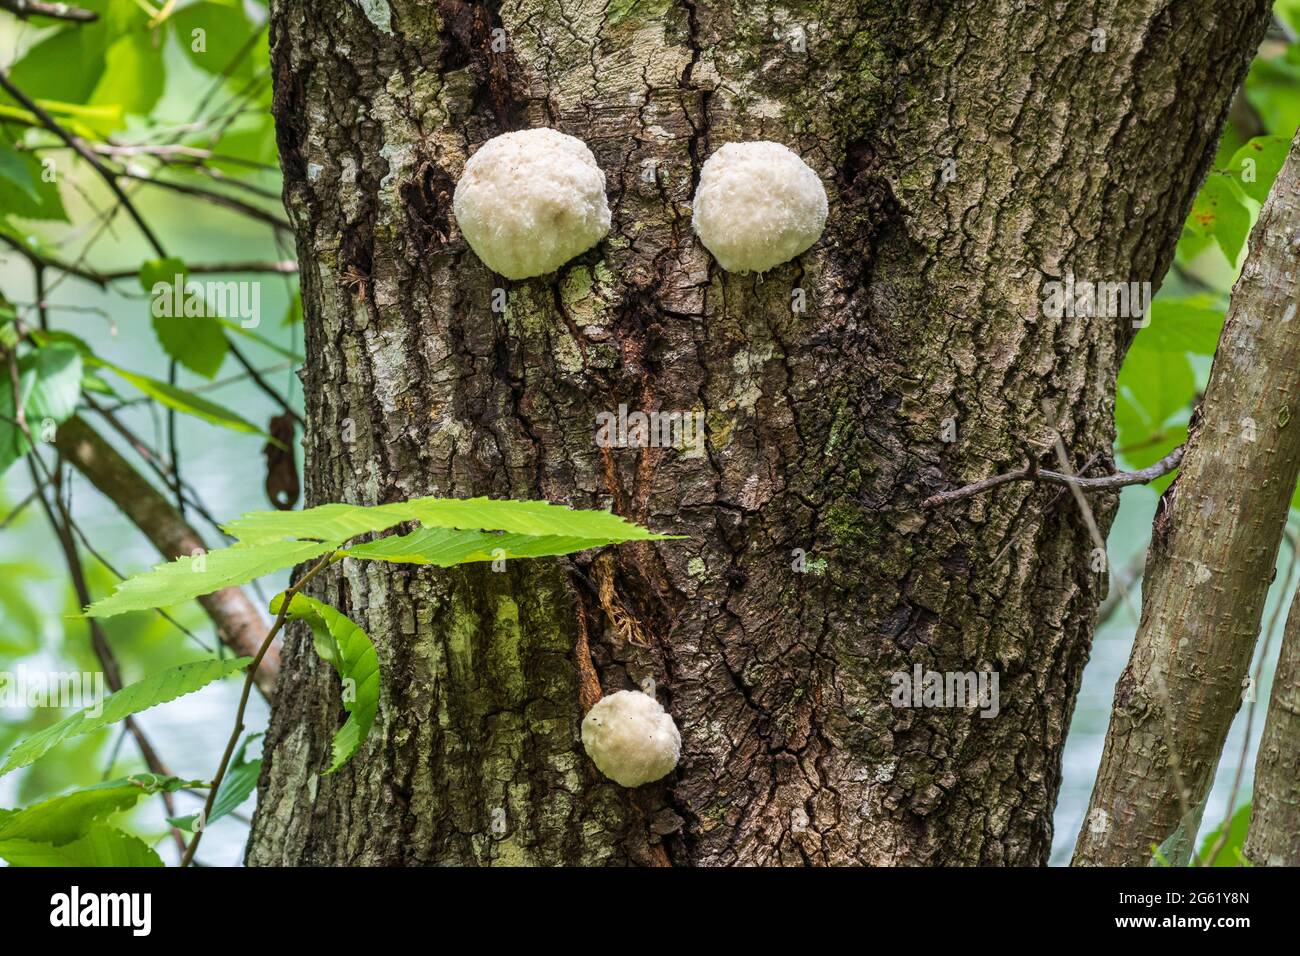 Fungo di puffball bianco che cresce sul tronco di un albero di quercia viva meridionale - Homosassa, Florida, USA Foto Stock